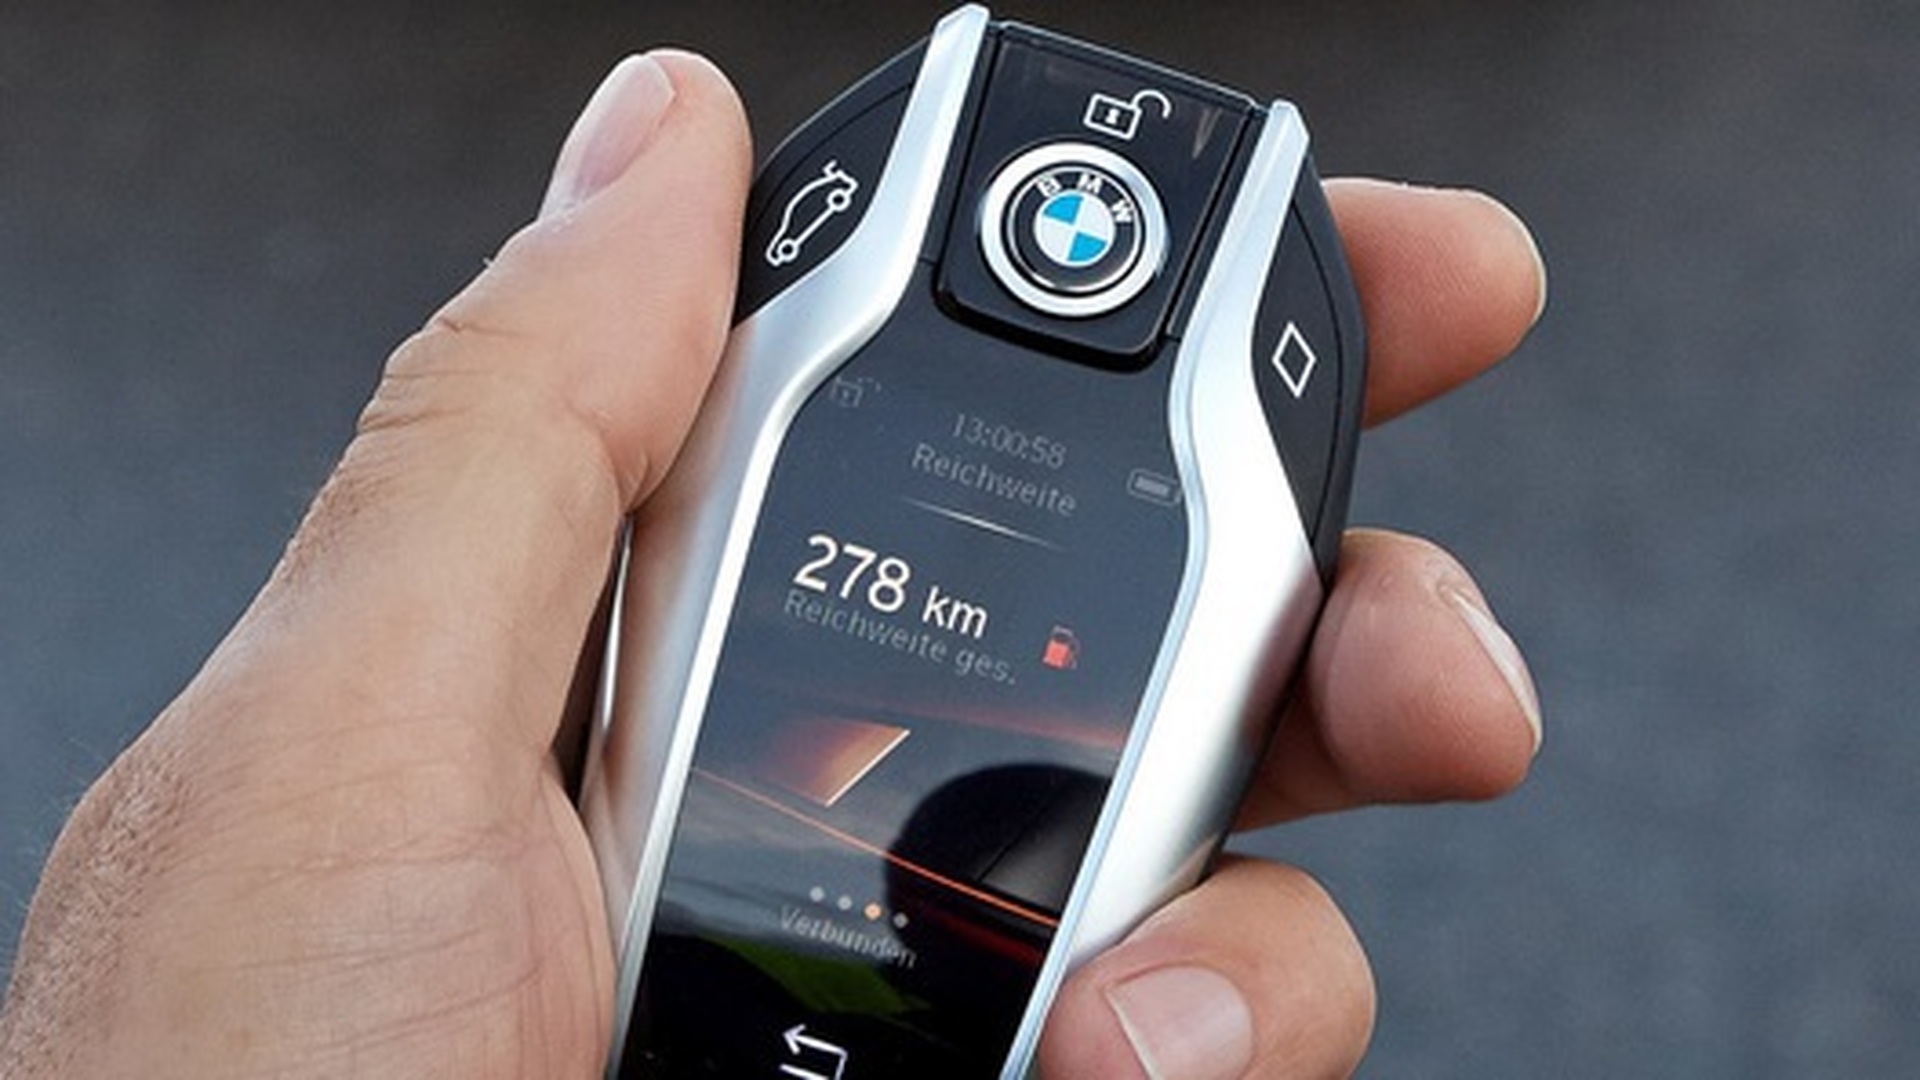 Ключ BMW 7